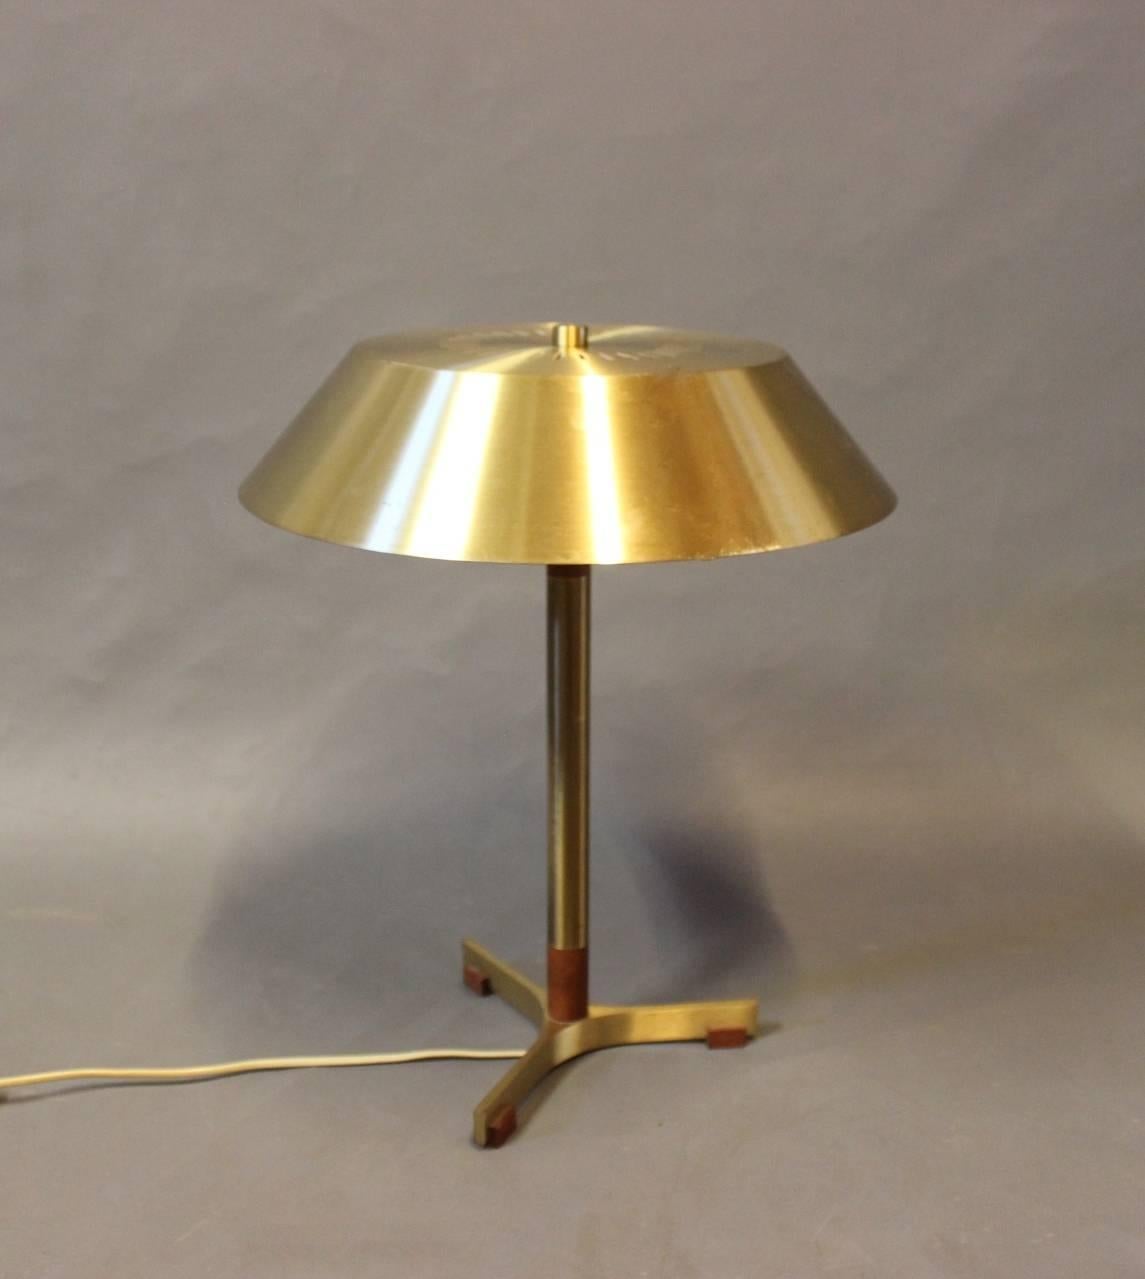 Scandinavian Modern Tablelamp, Model President, in Brass and Teak by Fog and Mørup, 1960s